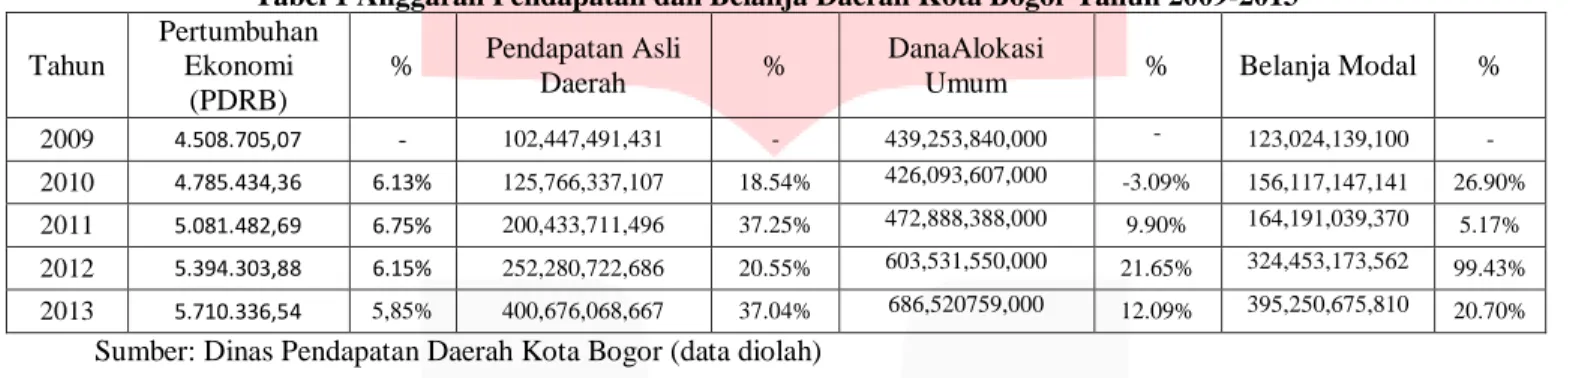 Tabel 1 Anggaran Pendapatan dan Belanja Daerah Kota Bogor Tahun 2009-2013 